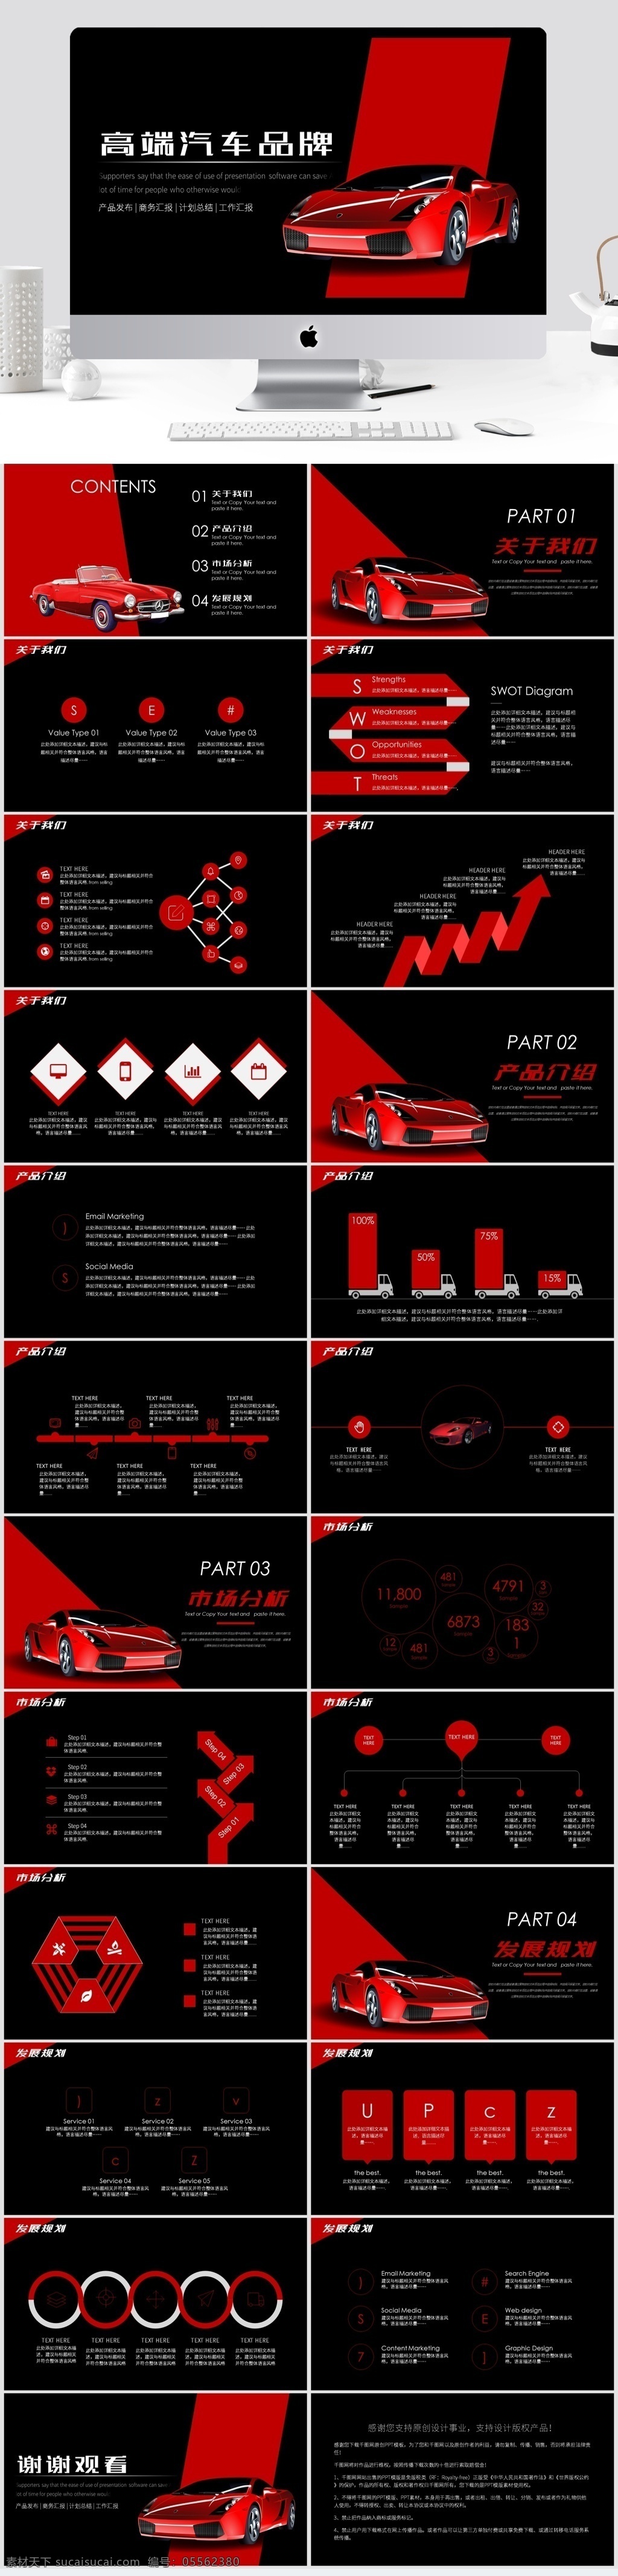 高端 汽车 产品 发布 模板 ppt模板 红色 创意 车 产品发布 品牌 红黑 黑色 跑车 速度 激情